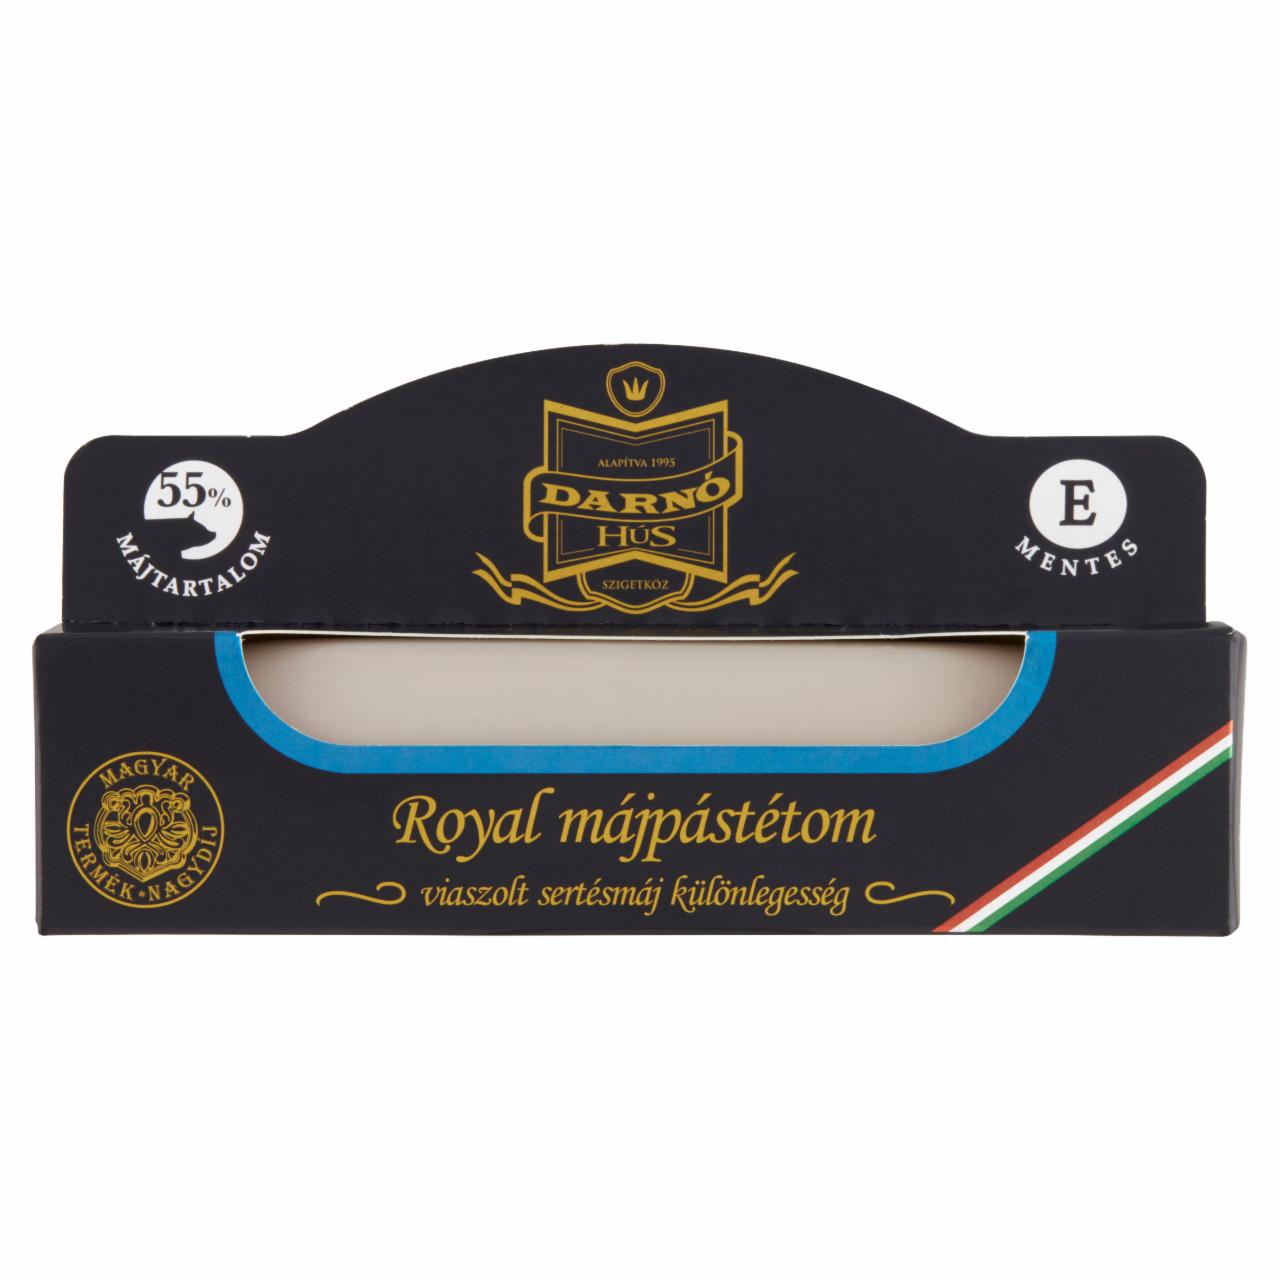 Képek - Darnó-Hús Royal májpástétom 150 g